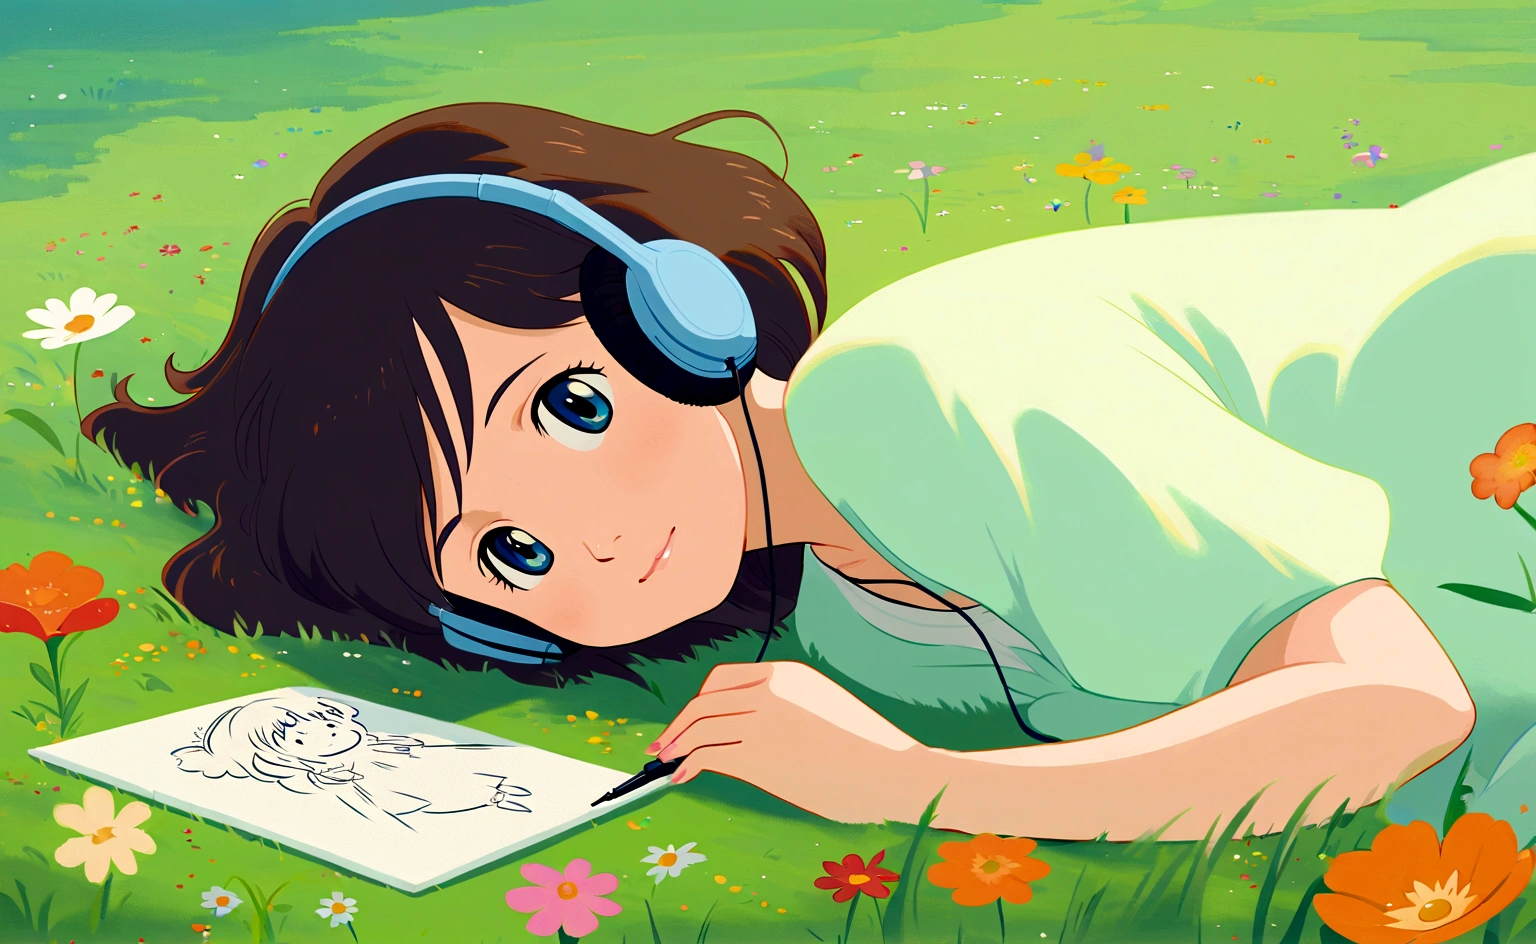 una linda chica tumbada en la hierba en un prado lleno de hermosas flores, simple, Dibujo, escuchando música, Estilo Estudio Ghibli, la hierba se balancea hacia un lado, estudio ghibli inspirado, caprichoso, aireado, calma, sereno, enfriar, ghibli, animado, etéreo